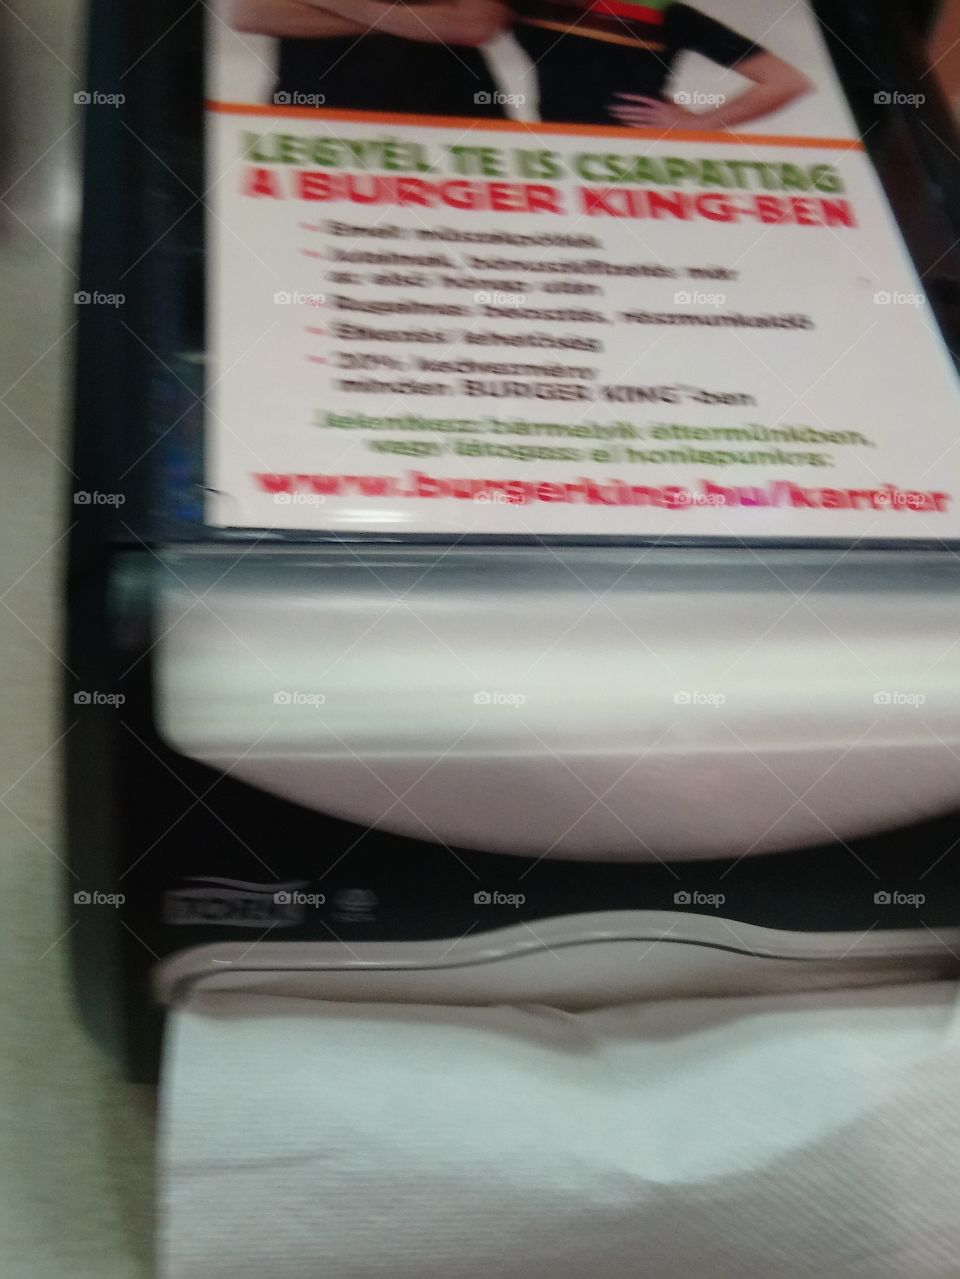 Burger King napkin dispenser